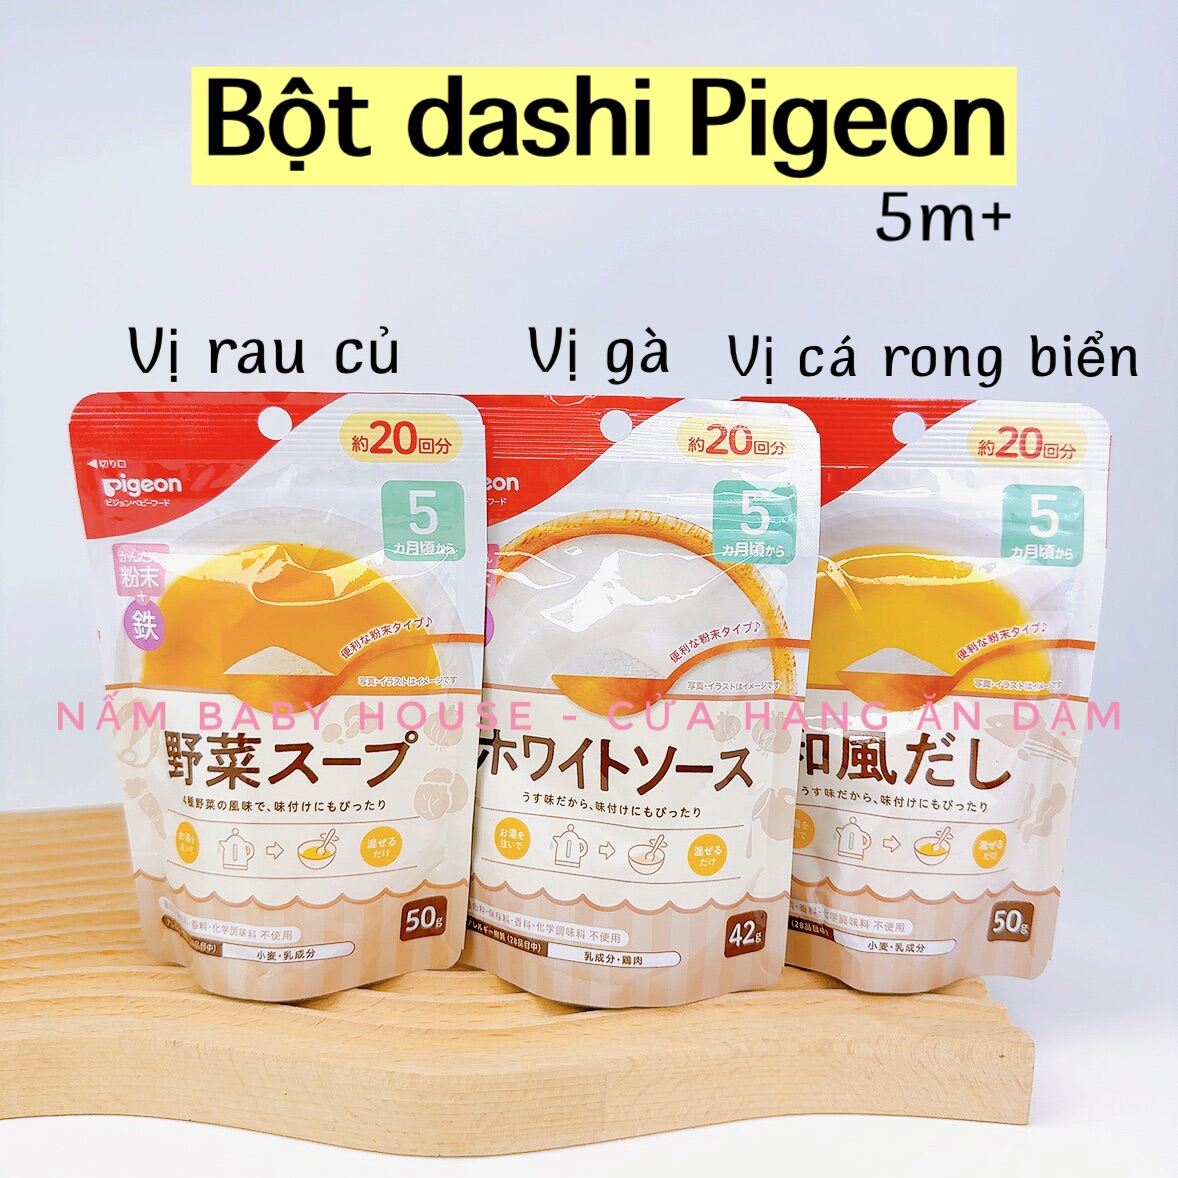 Bột dashi Pigeon Nhật Bản cho bé ăn dặm từ 5 tháng